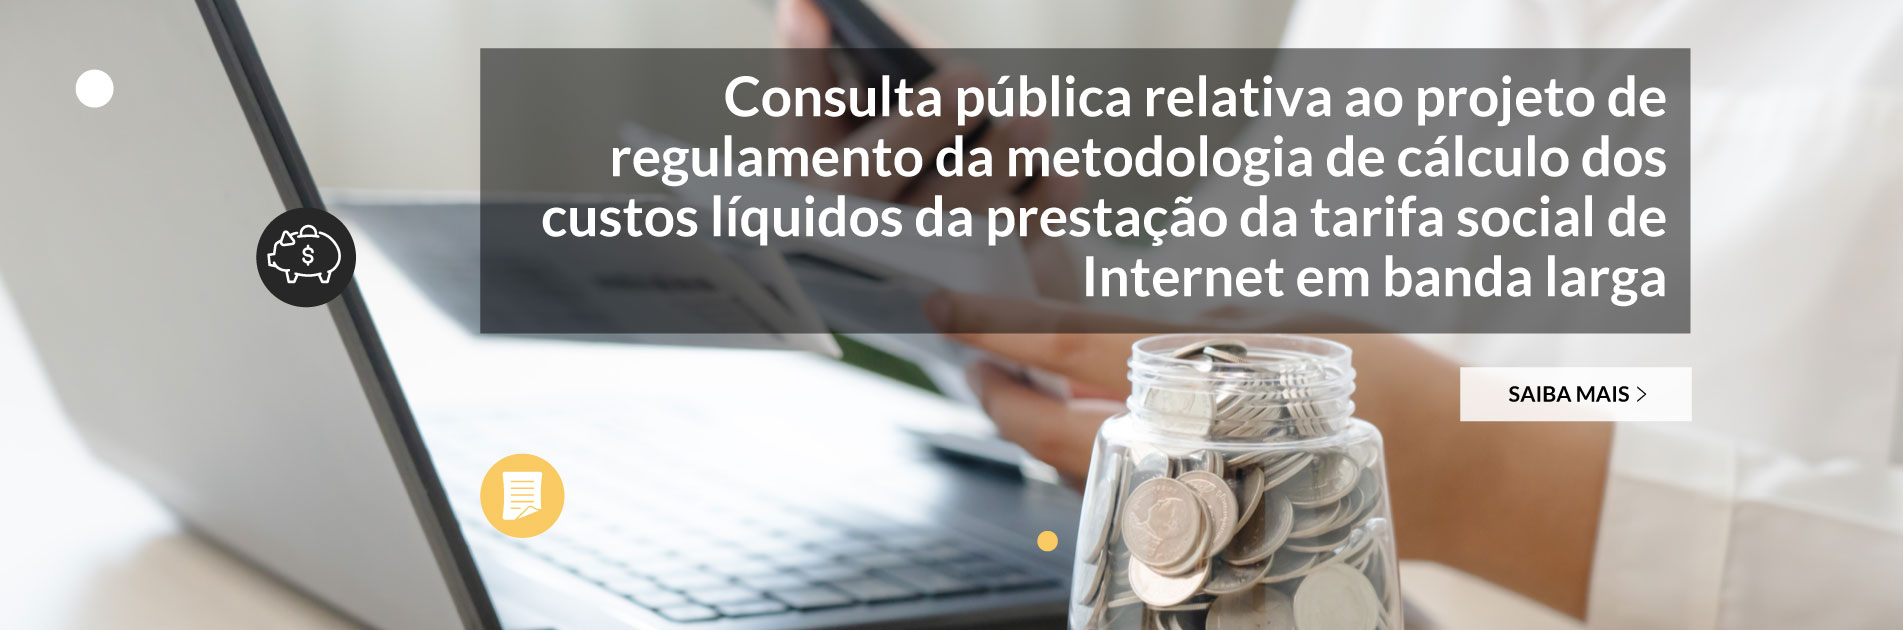 Consulta pública relativa ao projeto de regulamento da metodologia de cálculo dos custos líquidos da prestação da tarifa social de Internet em banda larga